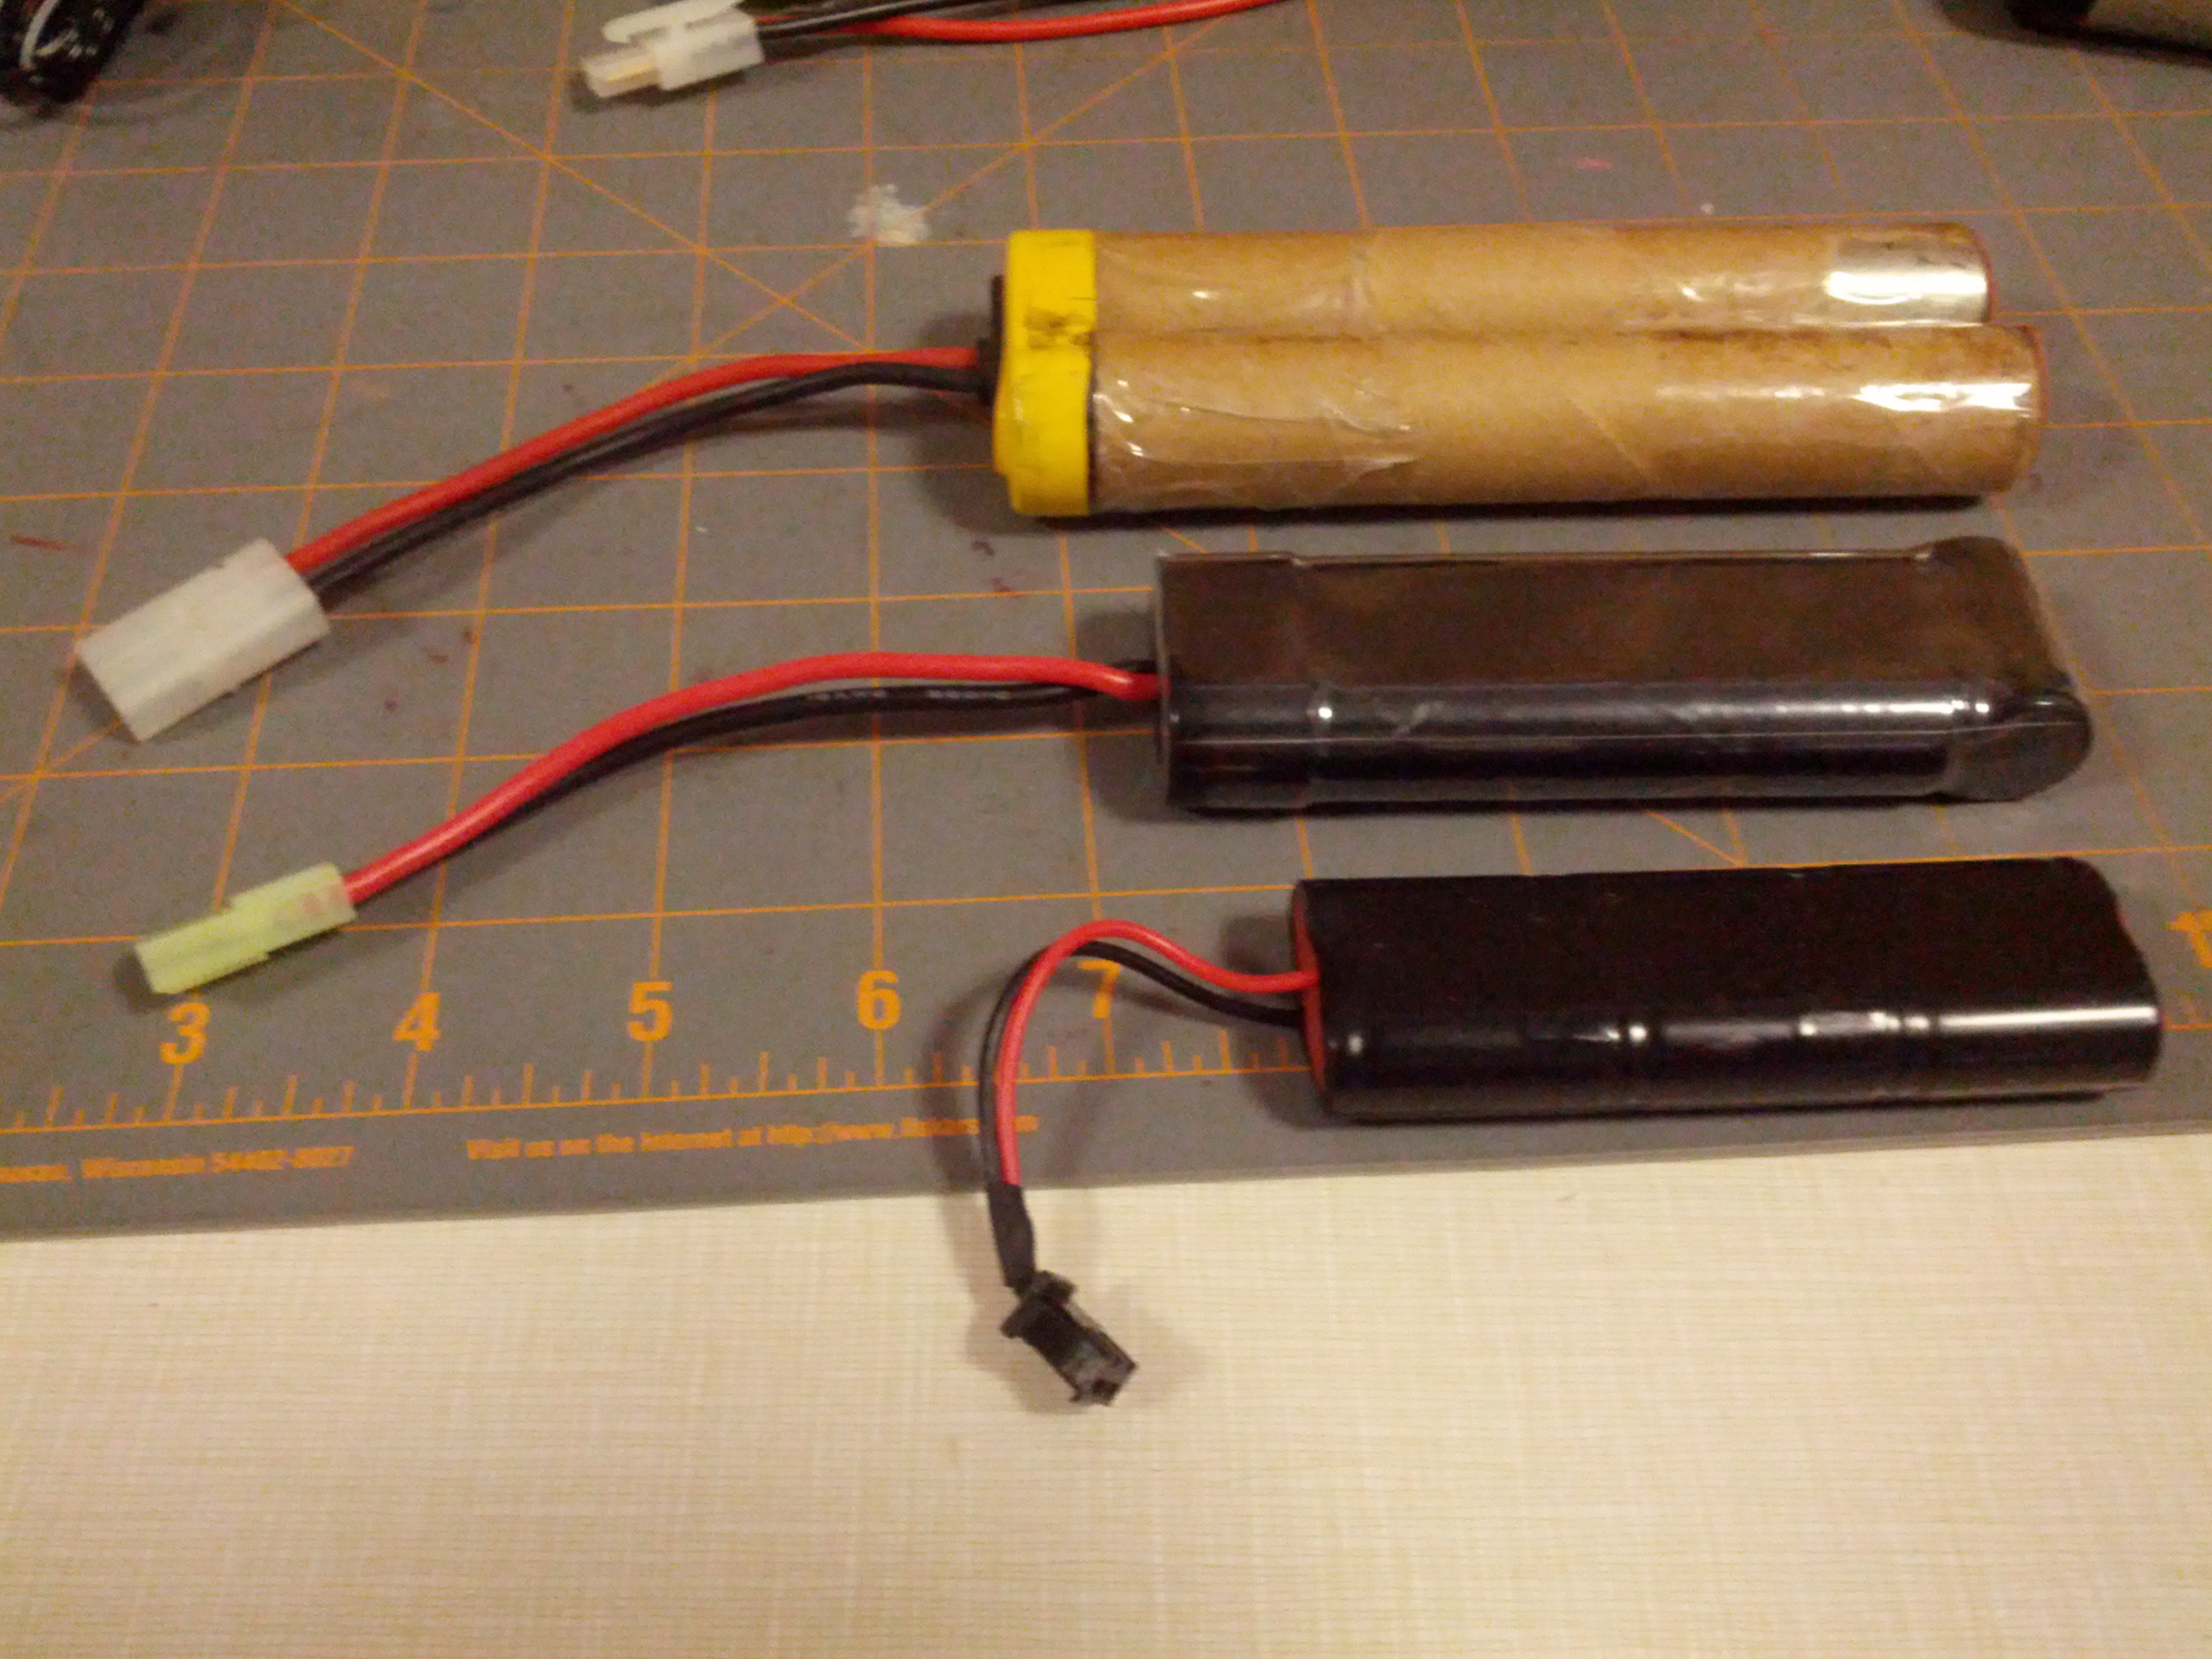 Black & Decker Versapak battery upgrade to 18650 Battery Part 1 